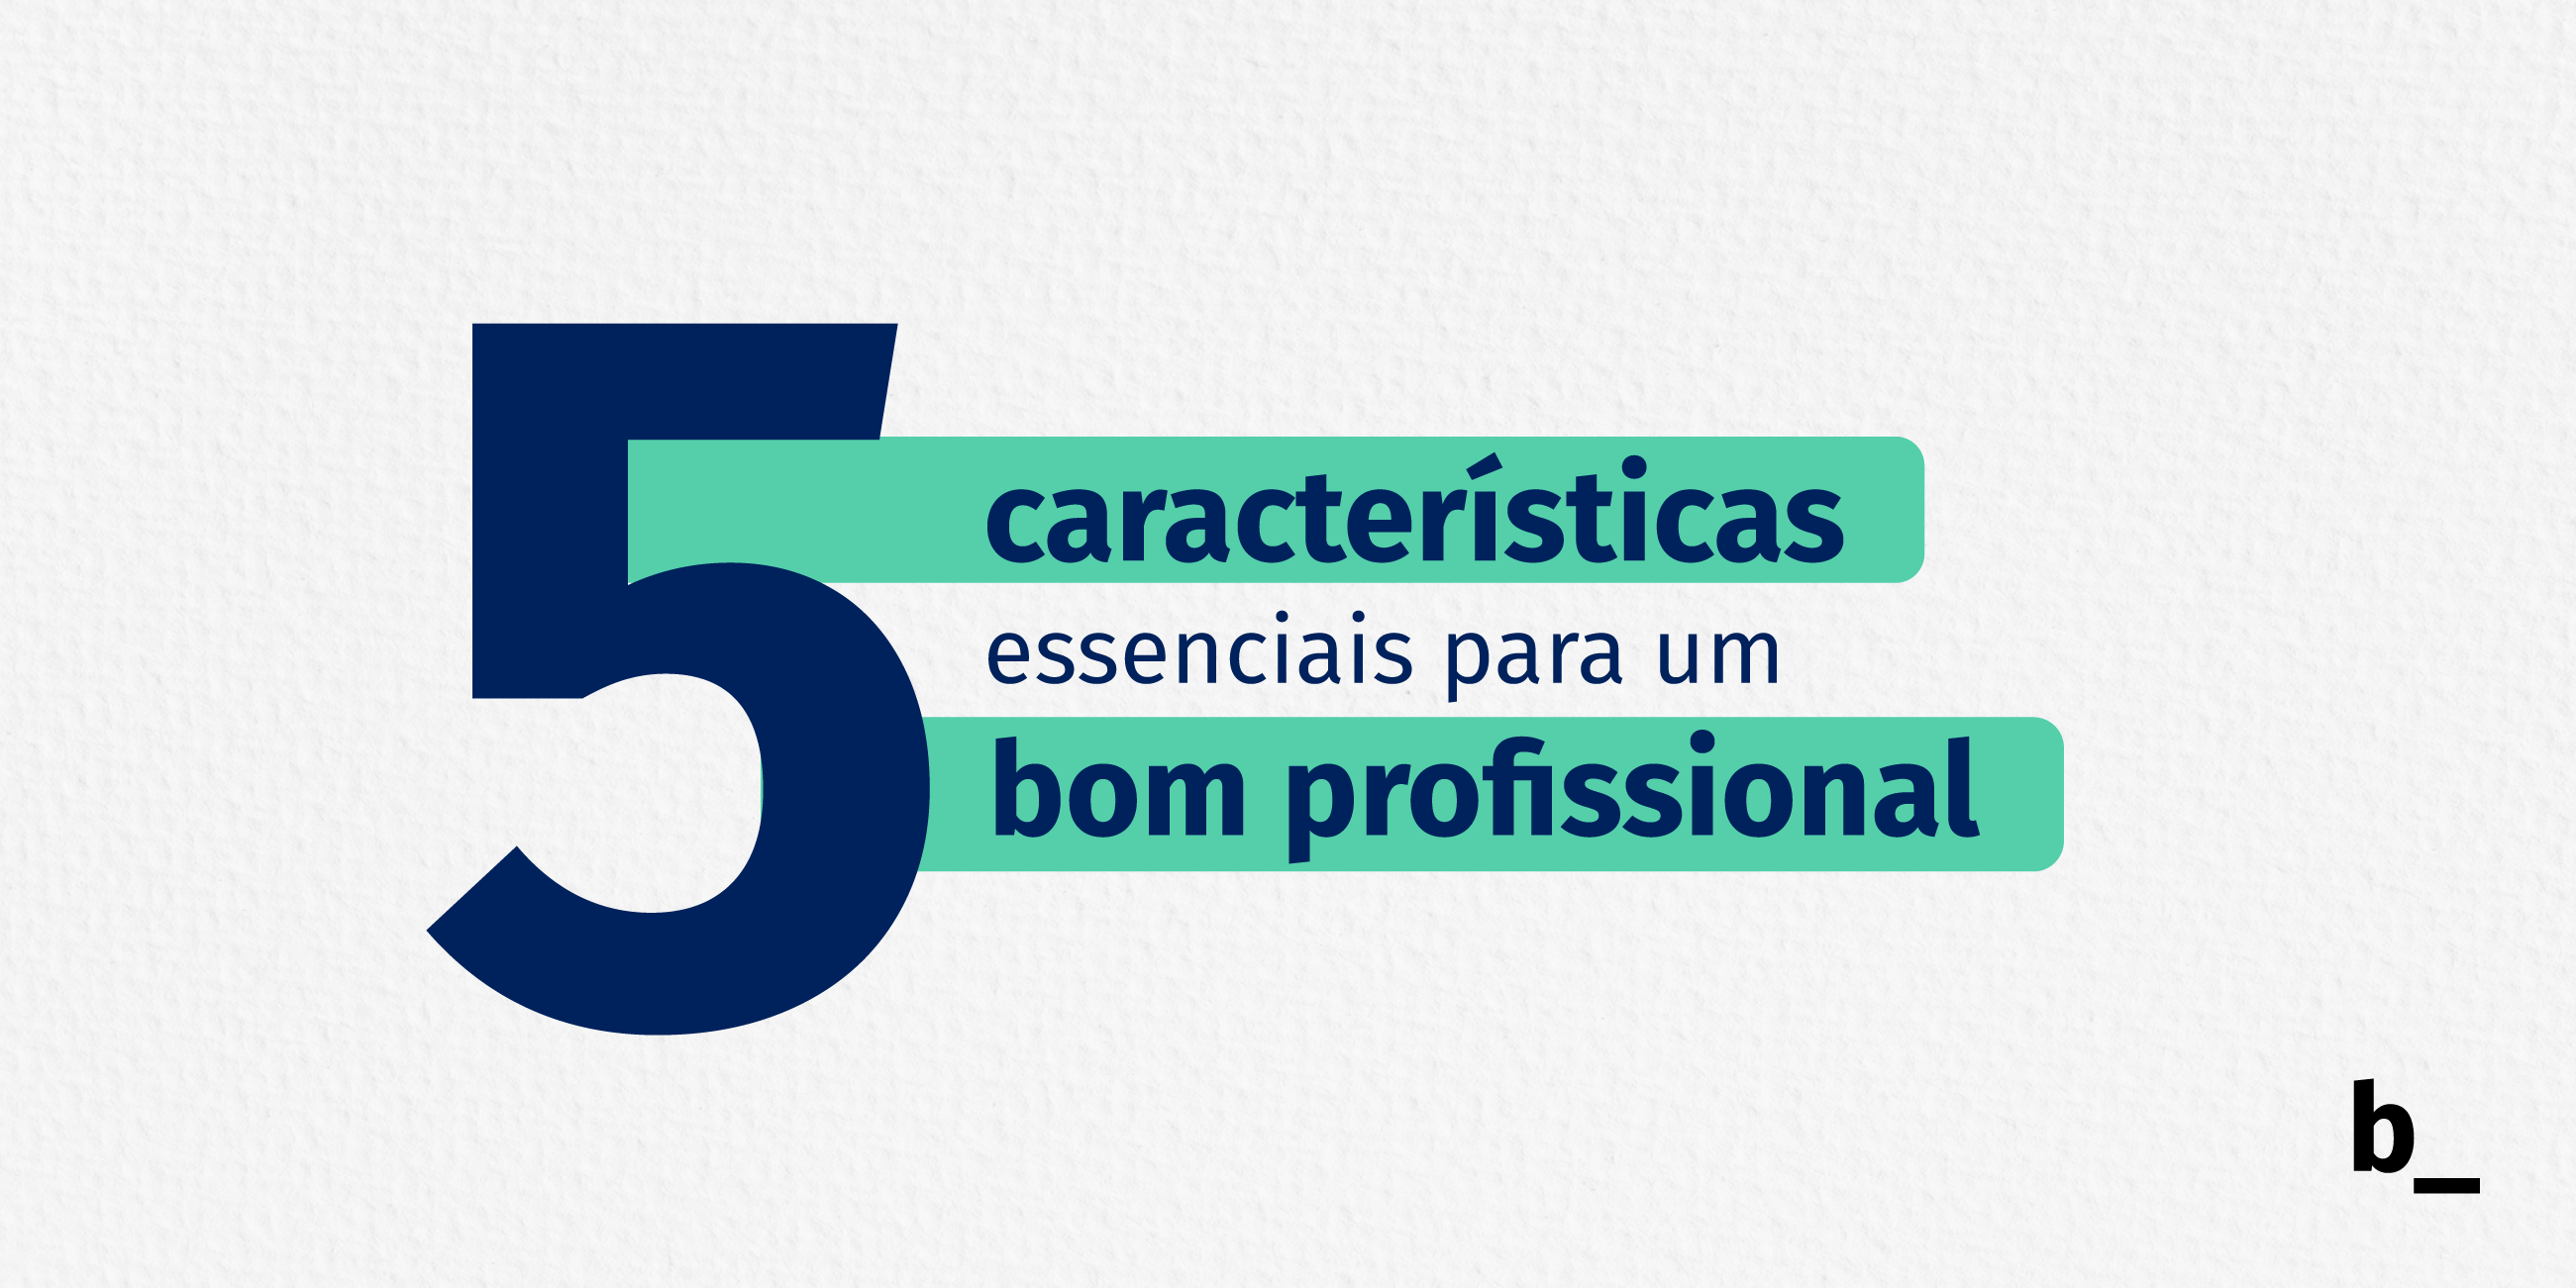 01.26_-_5_caracter__sticas_essenciais_para_um_bom_profissional_2